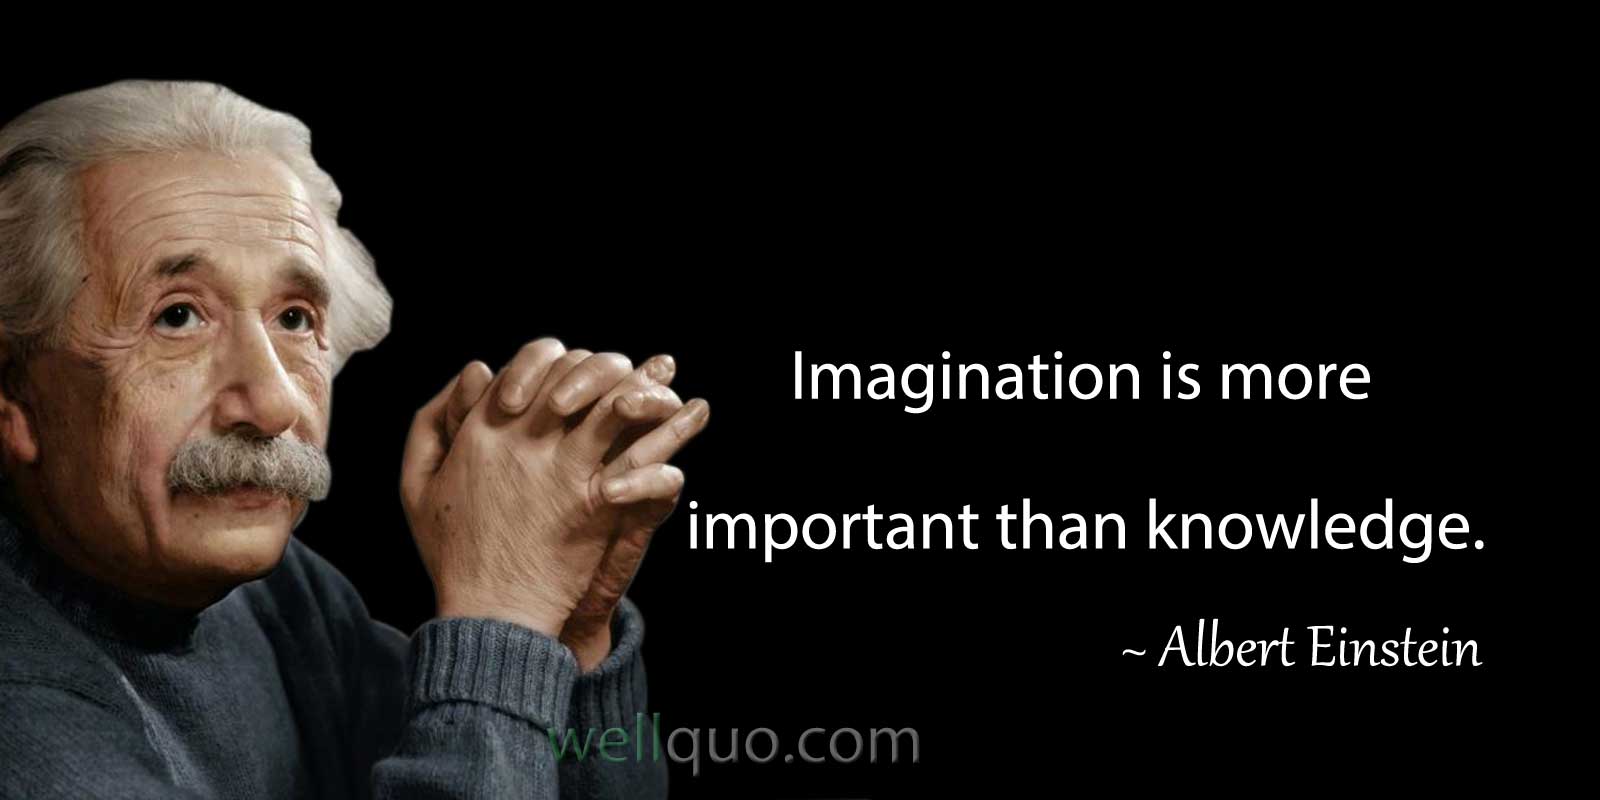 albert einstein quotes about imagination